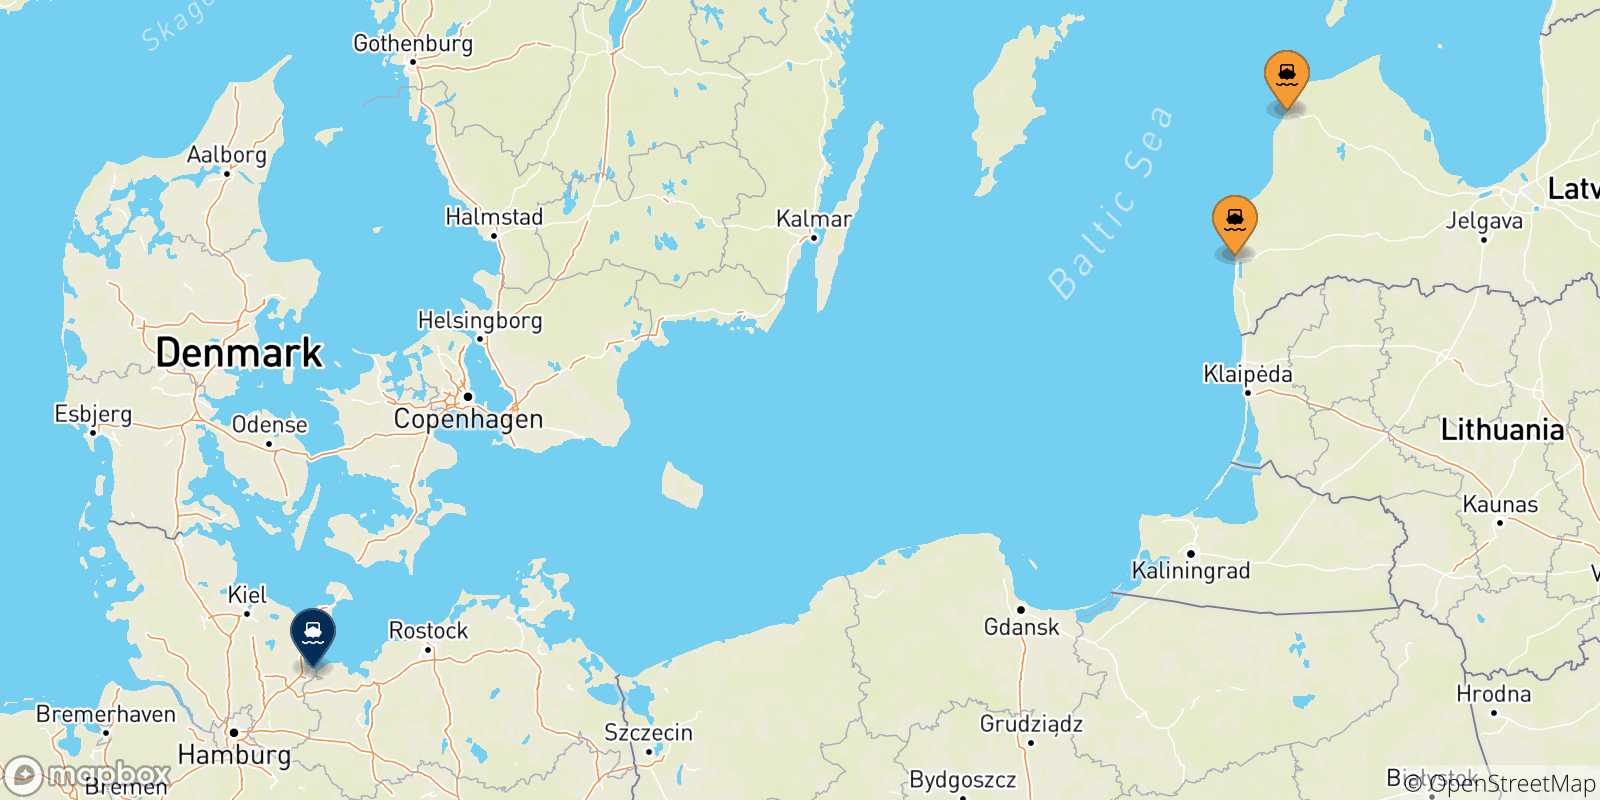 Mappa delle possibili rotte tra la Lettonia e la Germania